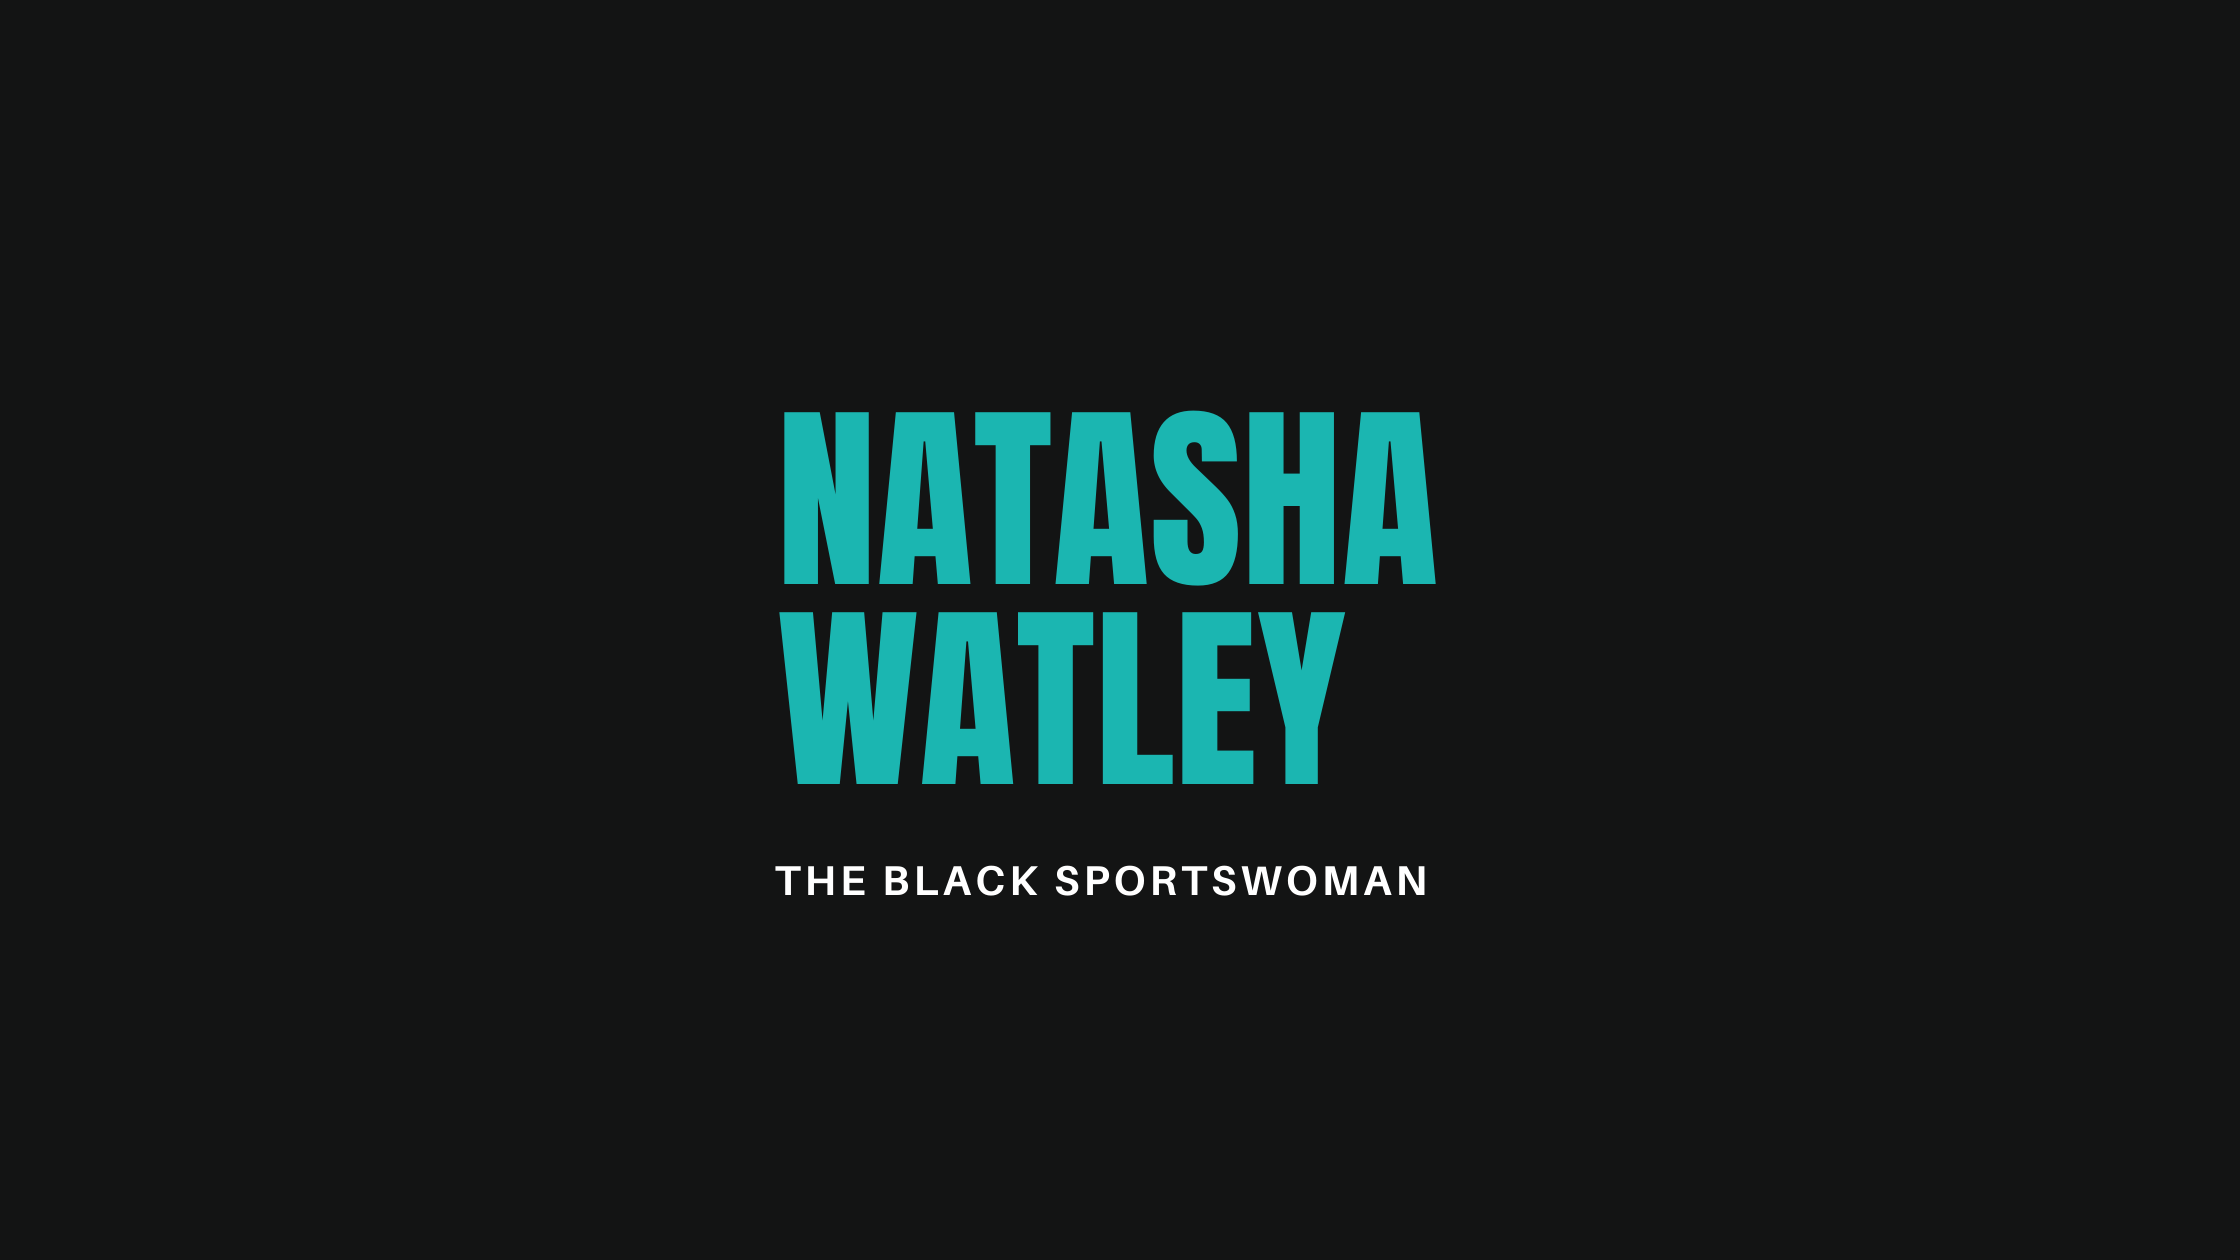 Natasha Watley: An athlete to know